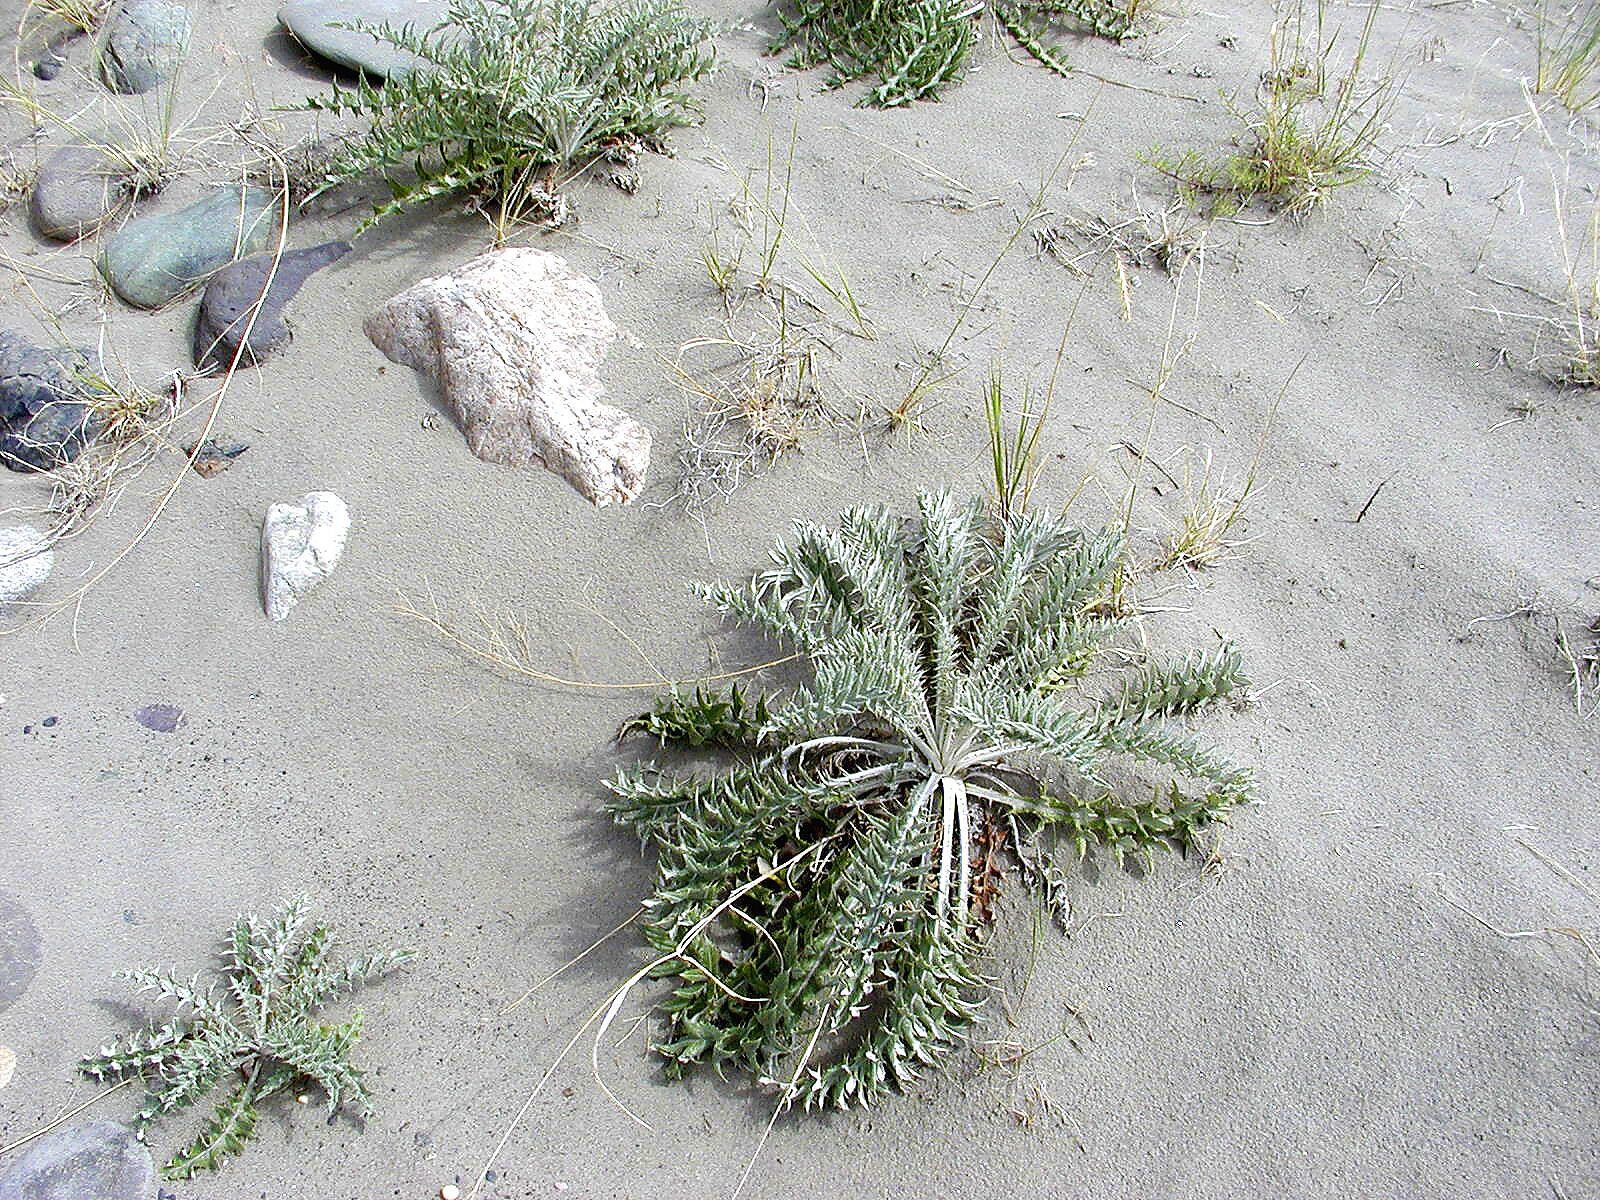 Olympus C2100UZ sample photo. Plant, sand, nature photography